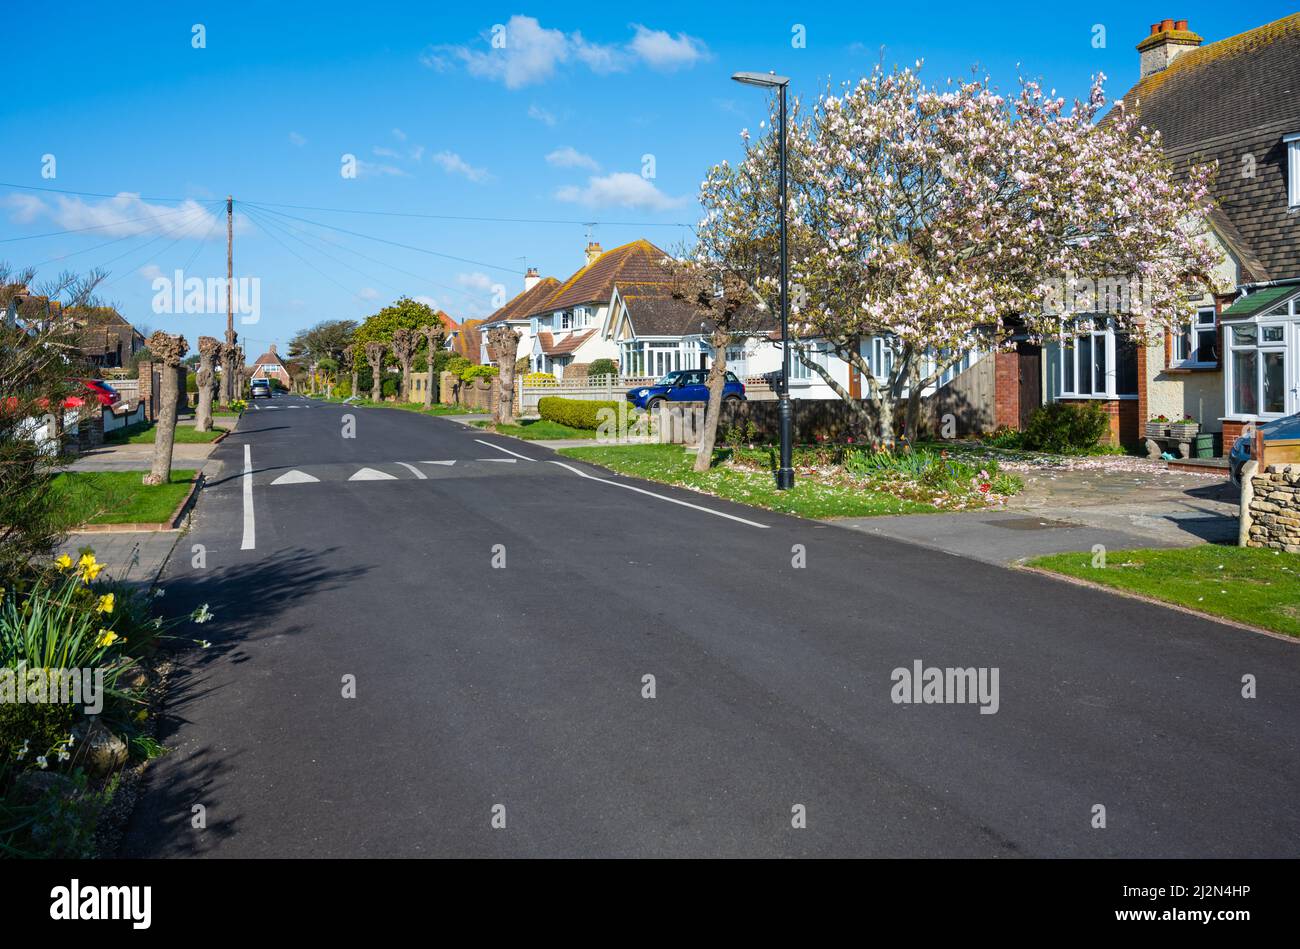 Straße ohne Gehwege oder Pflasterung mit bestiebelten Bäumen & Baum mit Blüten & Verkehr beruhigende Geschwindigkeit Buckel in einer ruhigen Wohnstraße in West Sussex, Großbritannien Stockfoto